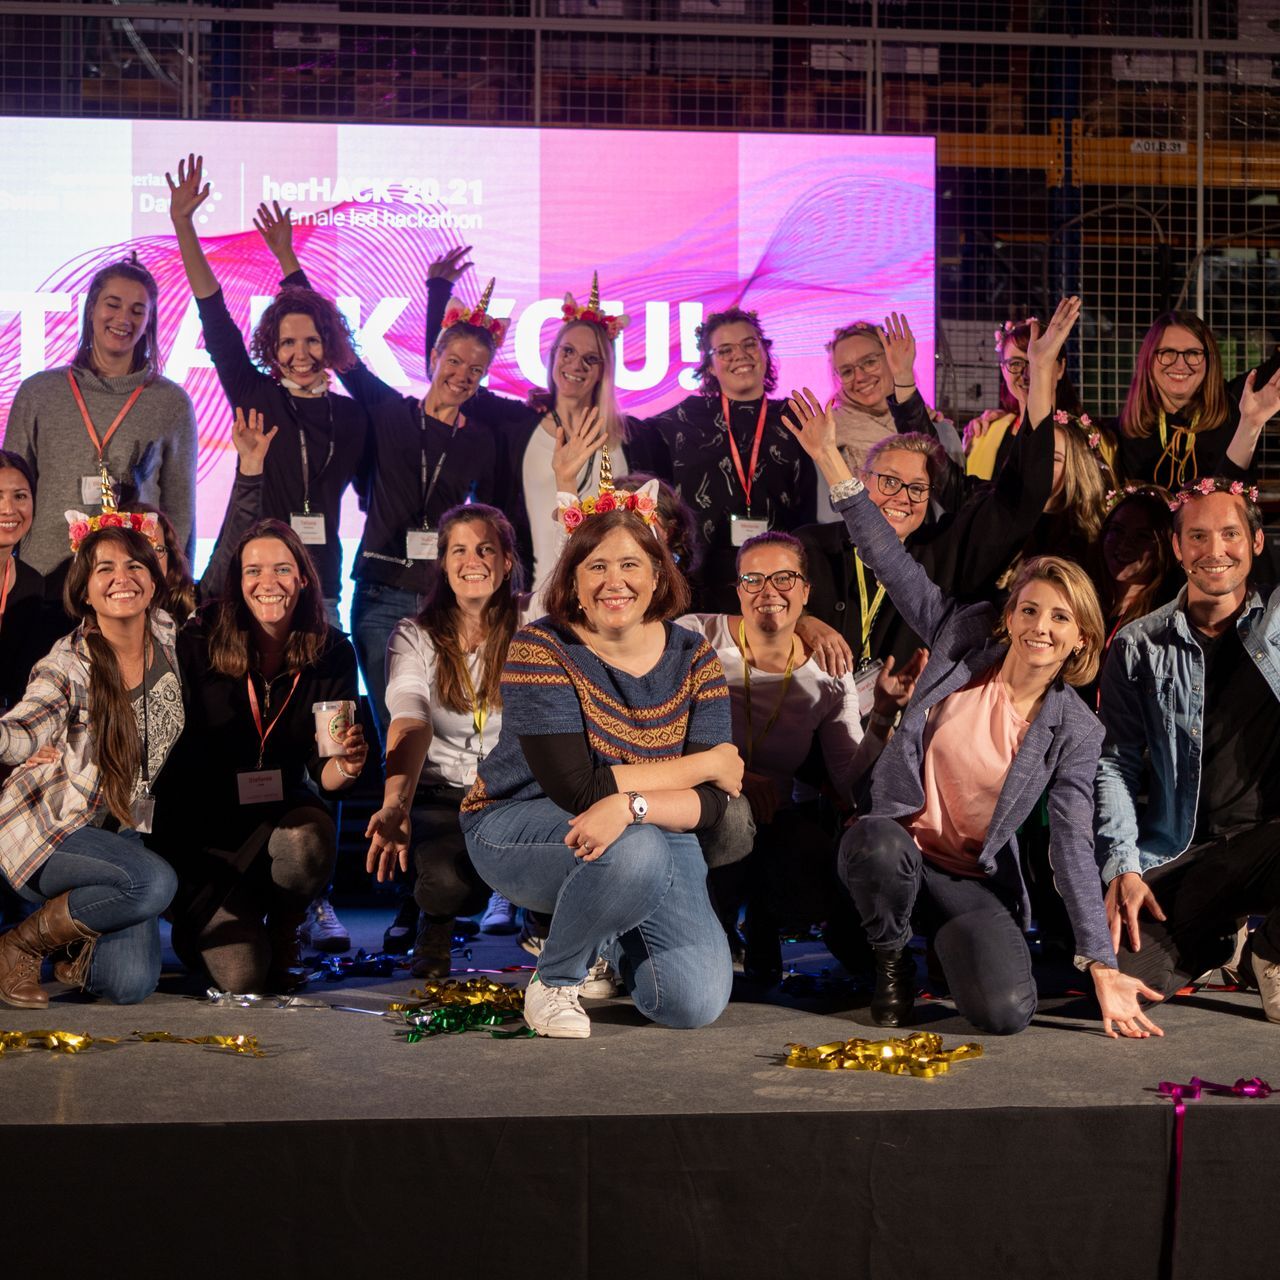 "HerHack" för kvinnors hackathon, som anordnades den 6 och 7 november som en del av "Swiss Digital Day", vanns av Team Iconics, bildat av Melanie Menge, Fiona Hediger, Yamina Siegrist, Maria Kliesch och Elisabeth MacKenzie (Foto: Moritz Schmid )